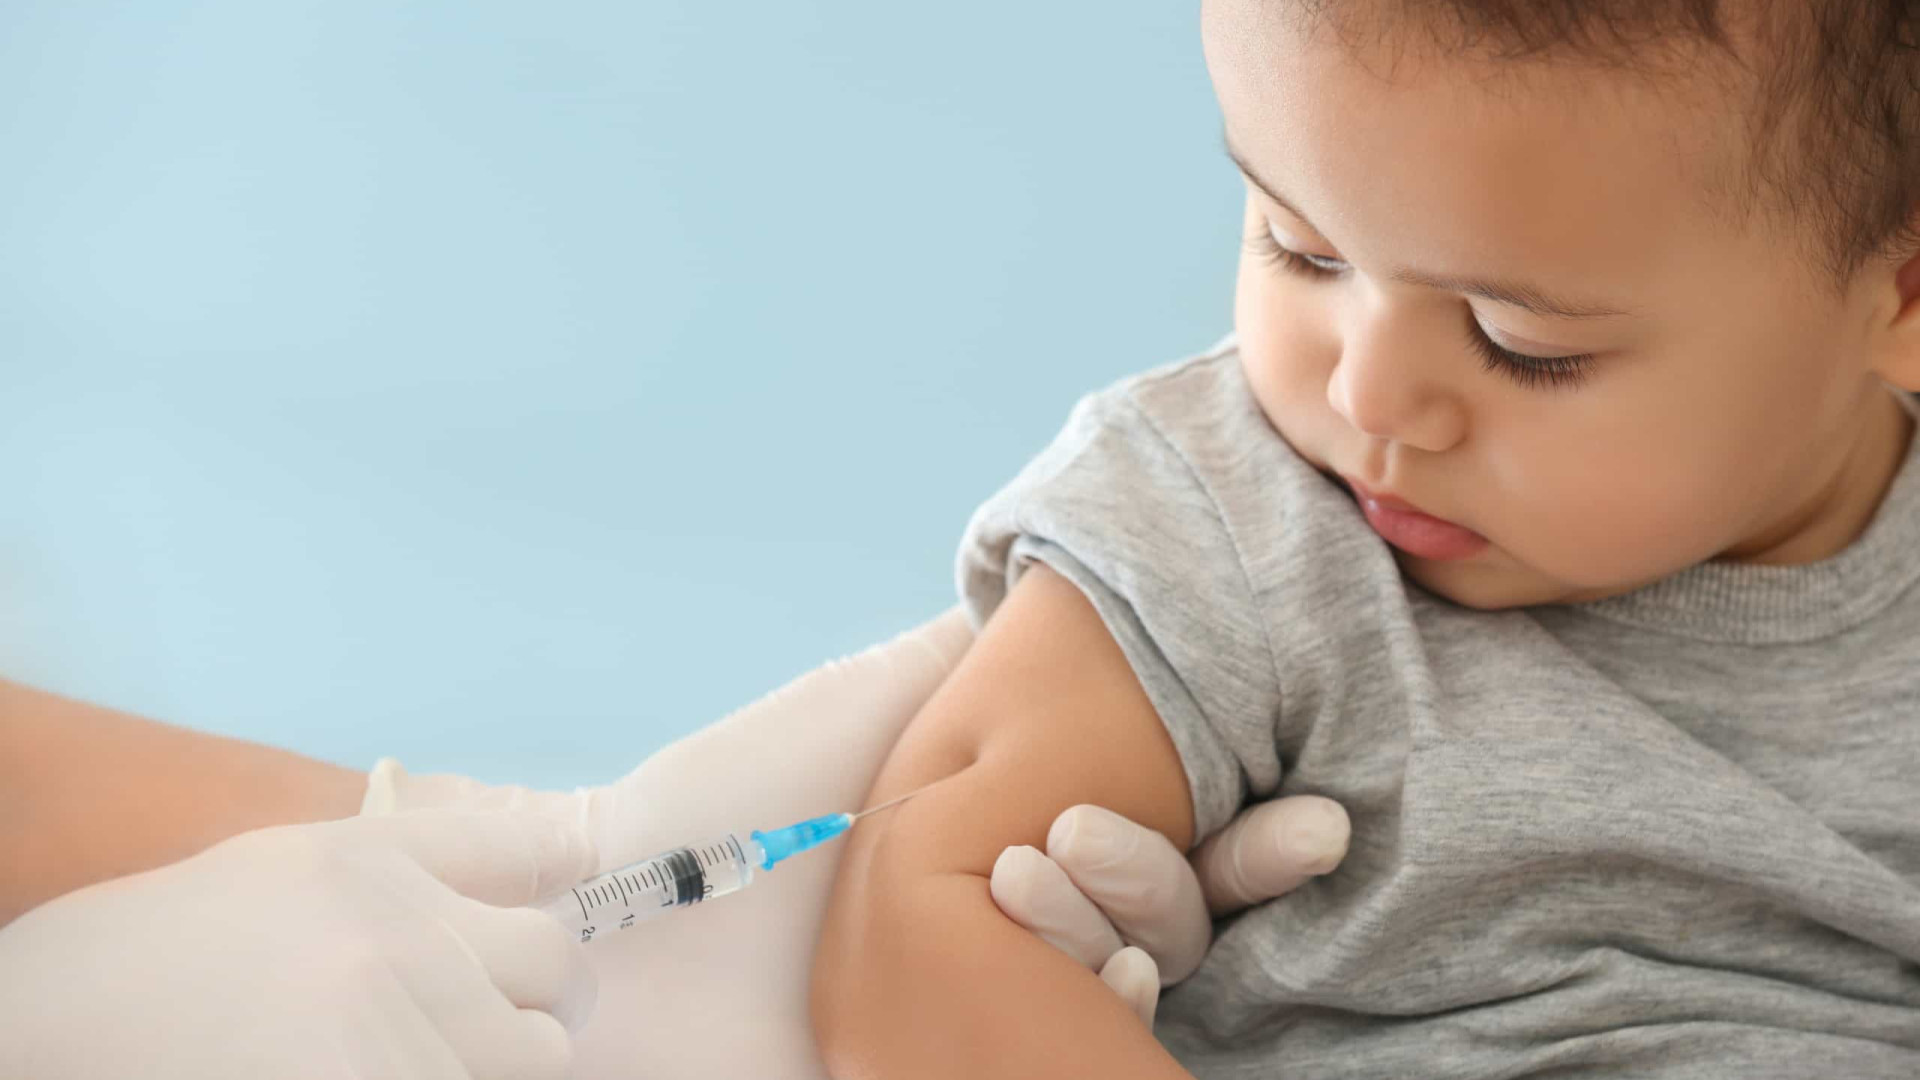 Brasil tem 500 mil crianças sem vacina da poliomielite, diz diretor da Fiocruz